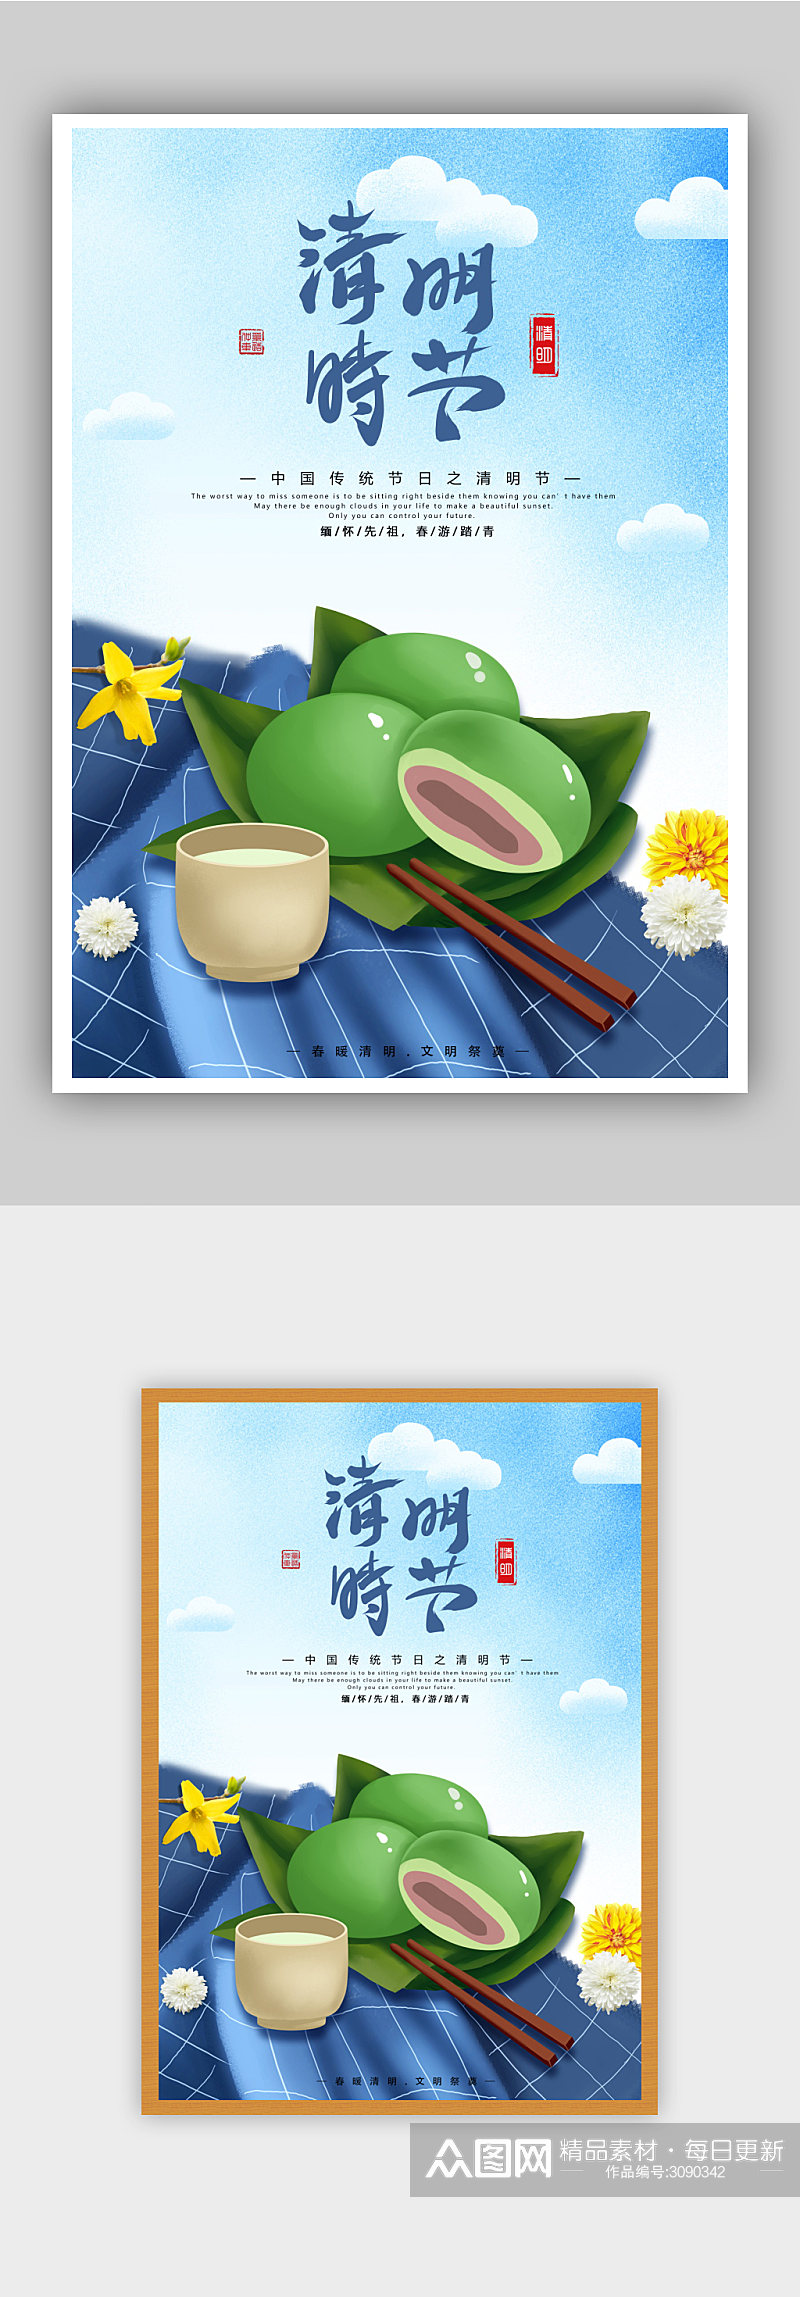 中国传统节日清明节青团菊花祭扫海报素材